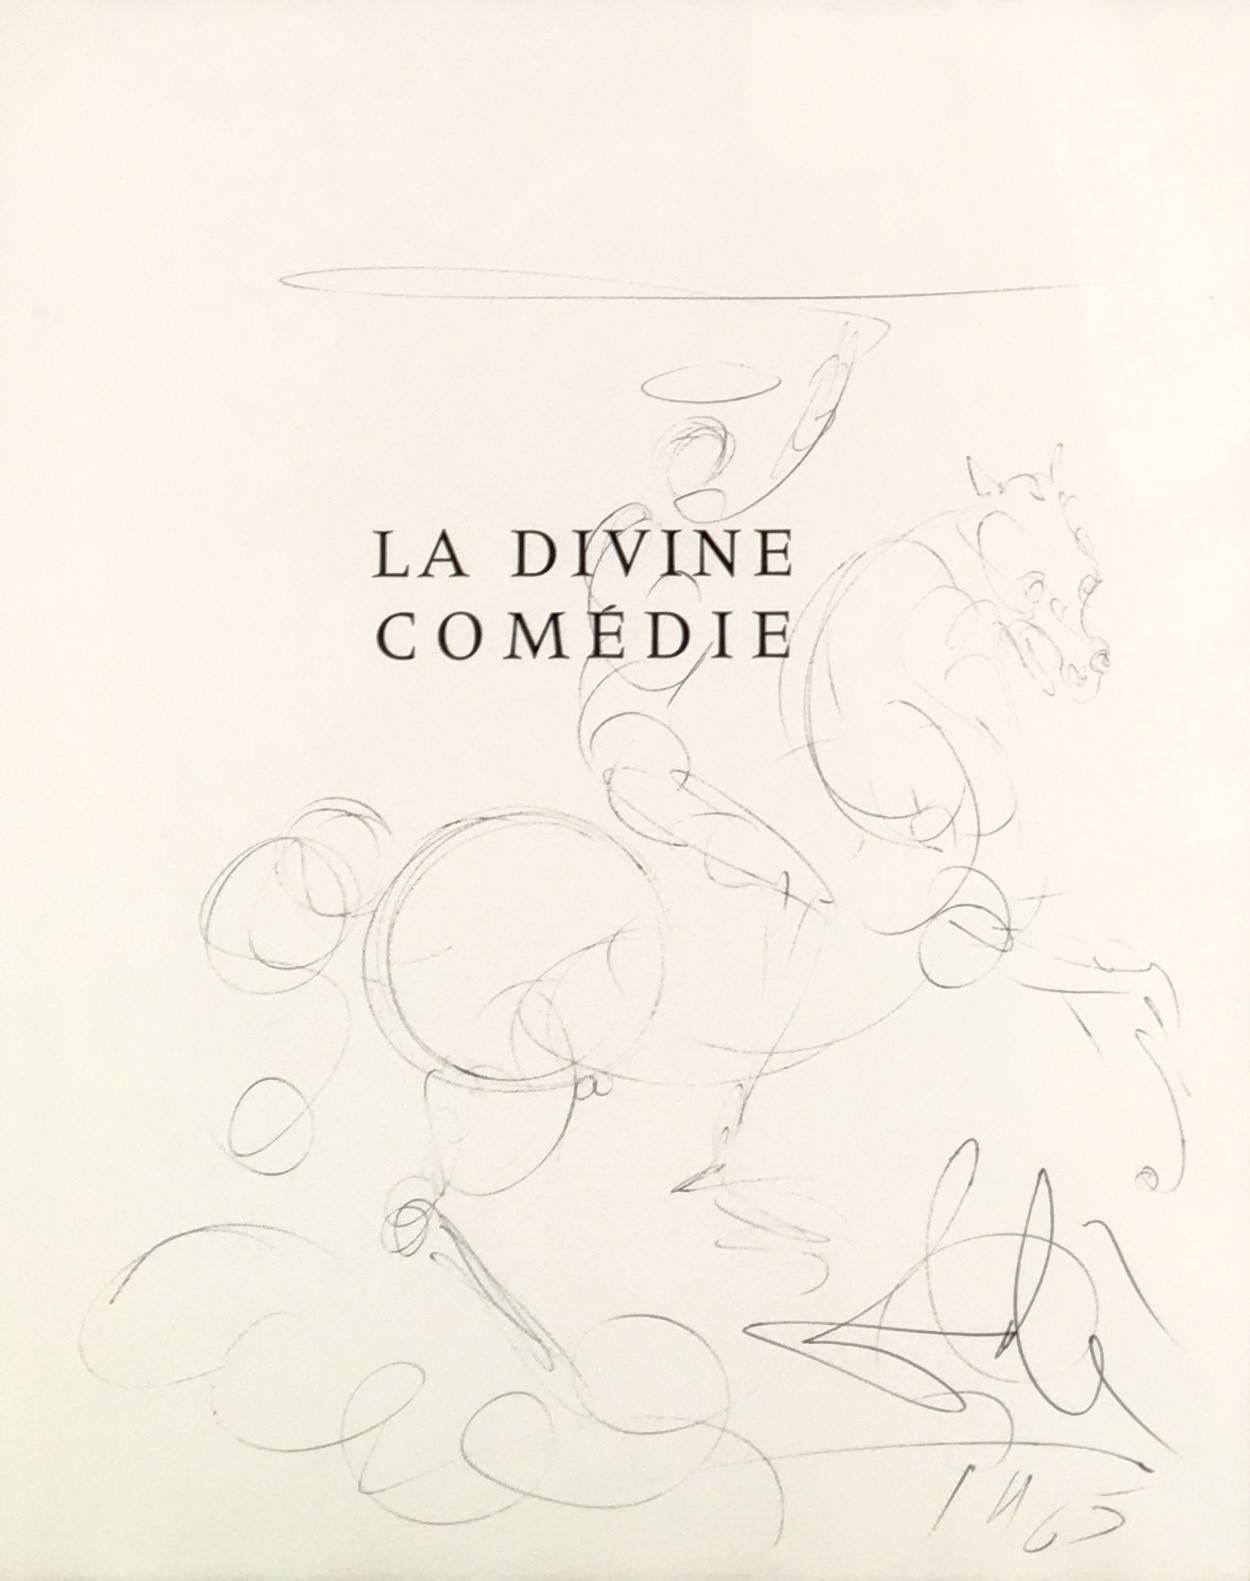 La Divine Comedie Title Page Drawing - Art by Salvador Dalí